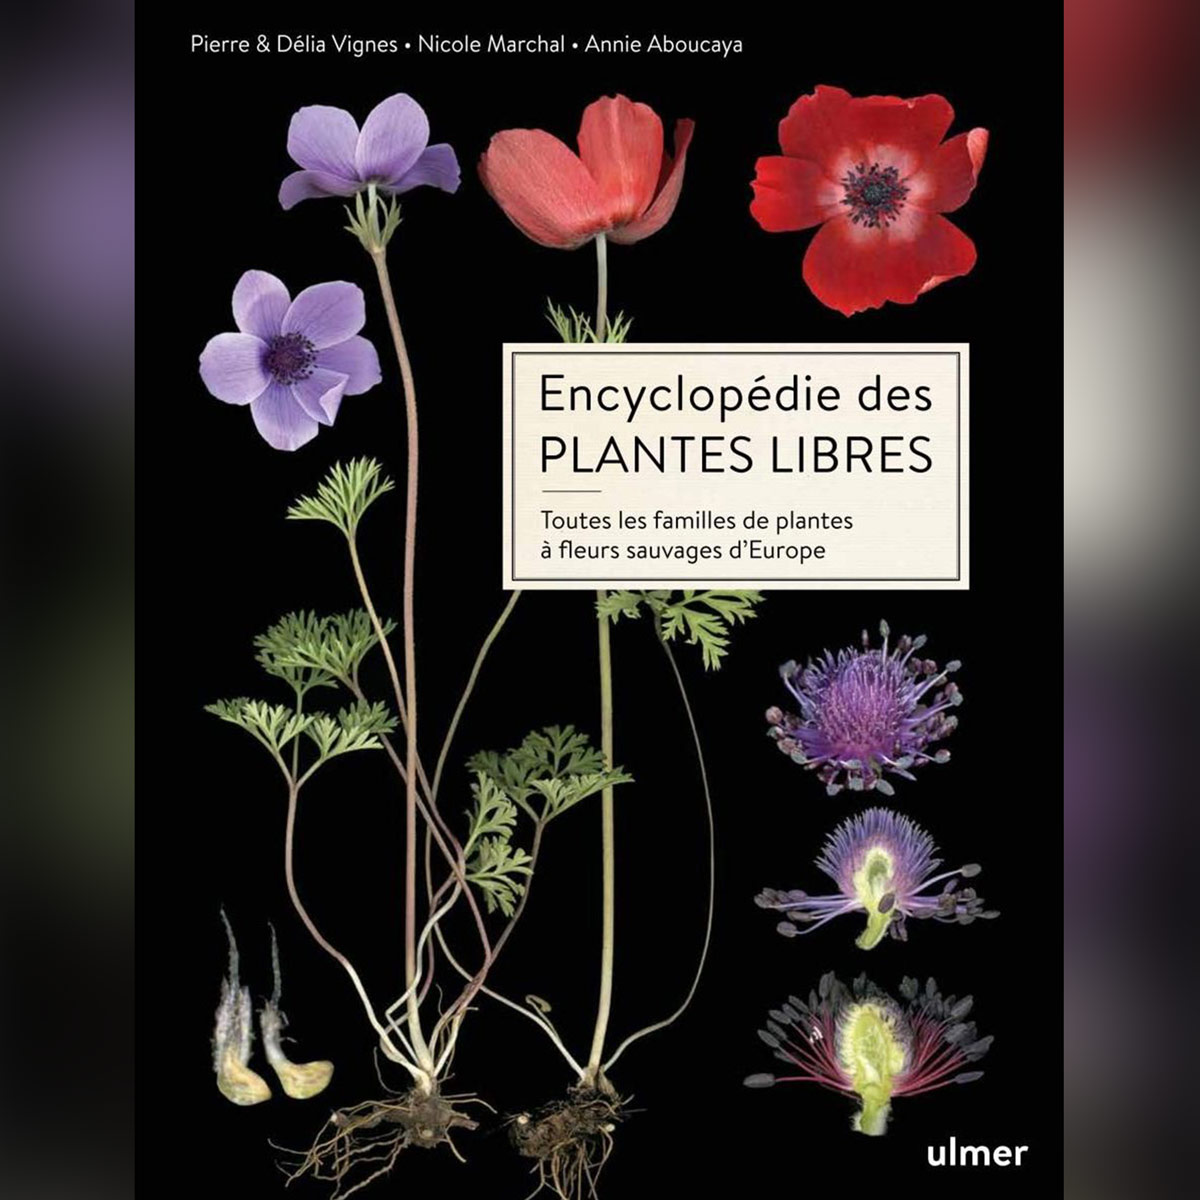 Annie Aboucaya et Nicole Marchal, auteures du livre « Encyclopédie des plantes libres» seront présentes lors de la deuxième édition du Festival Lire Au Pradet les 23 et 24 mars 2024